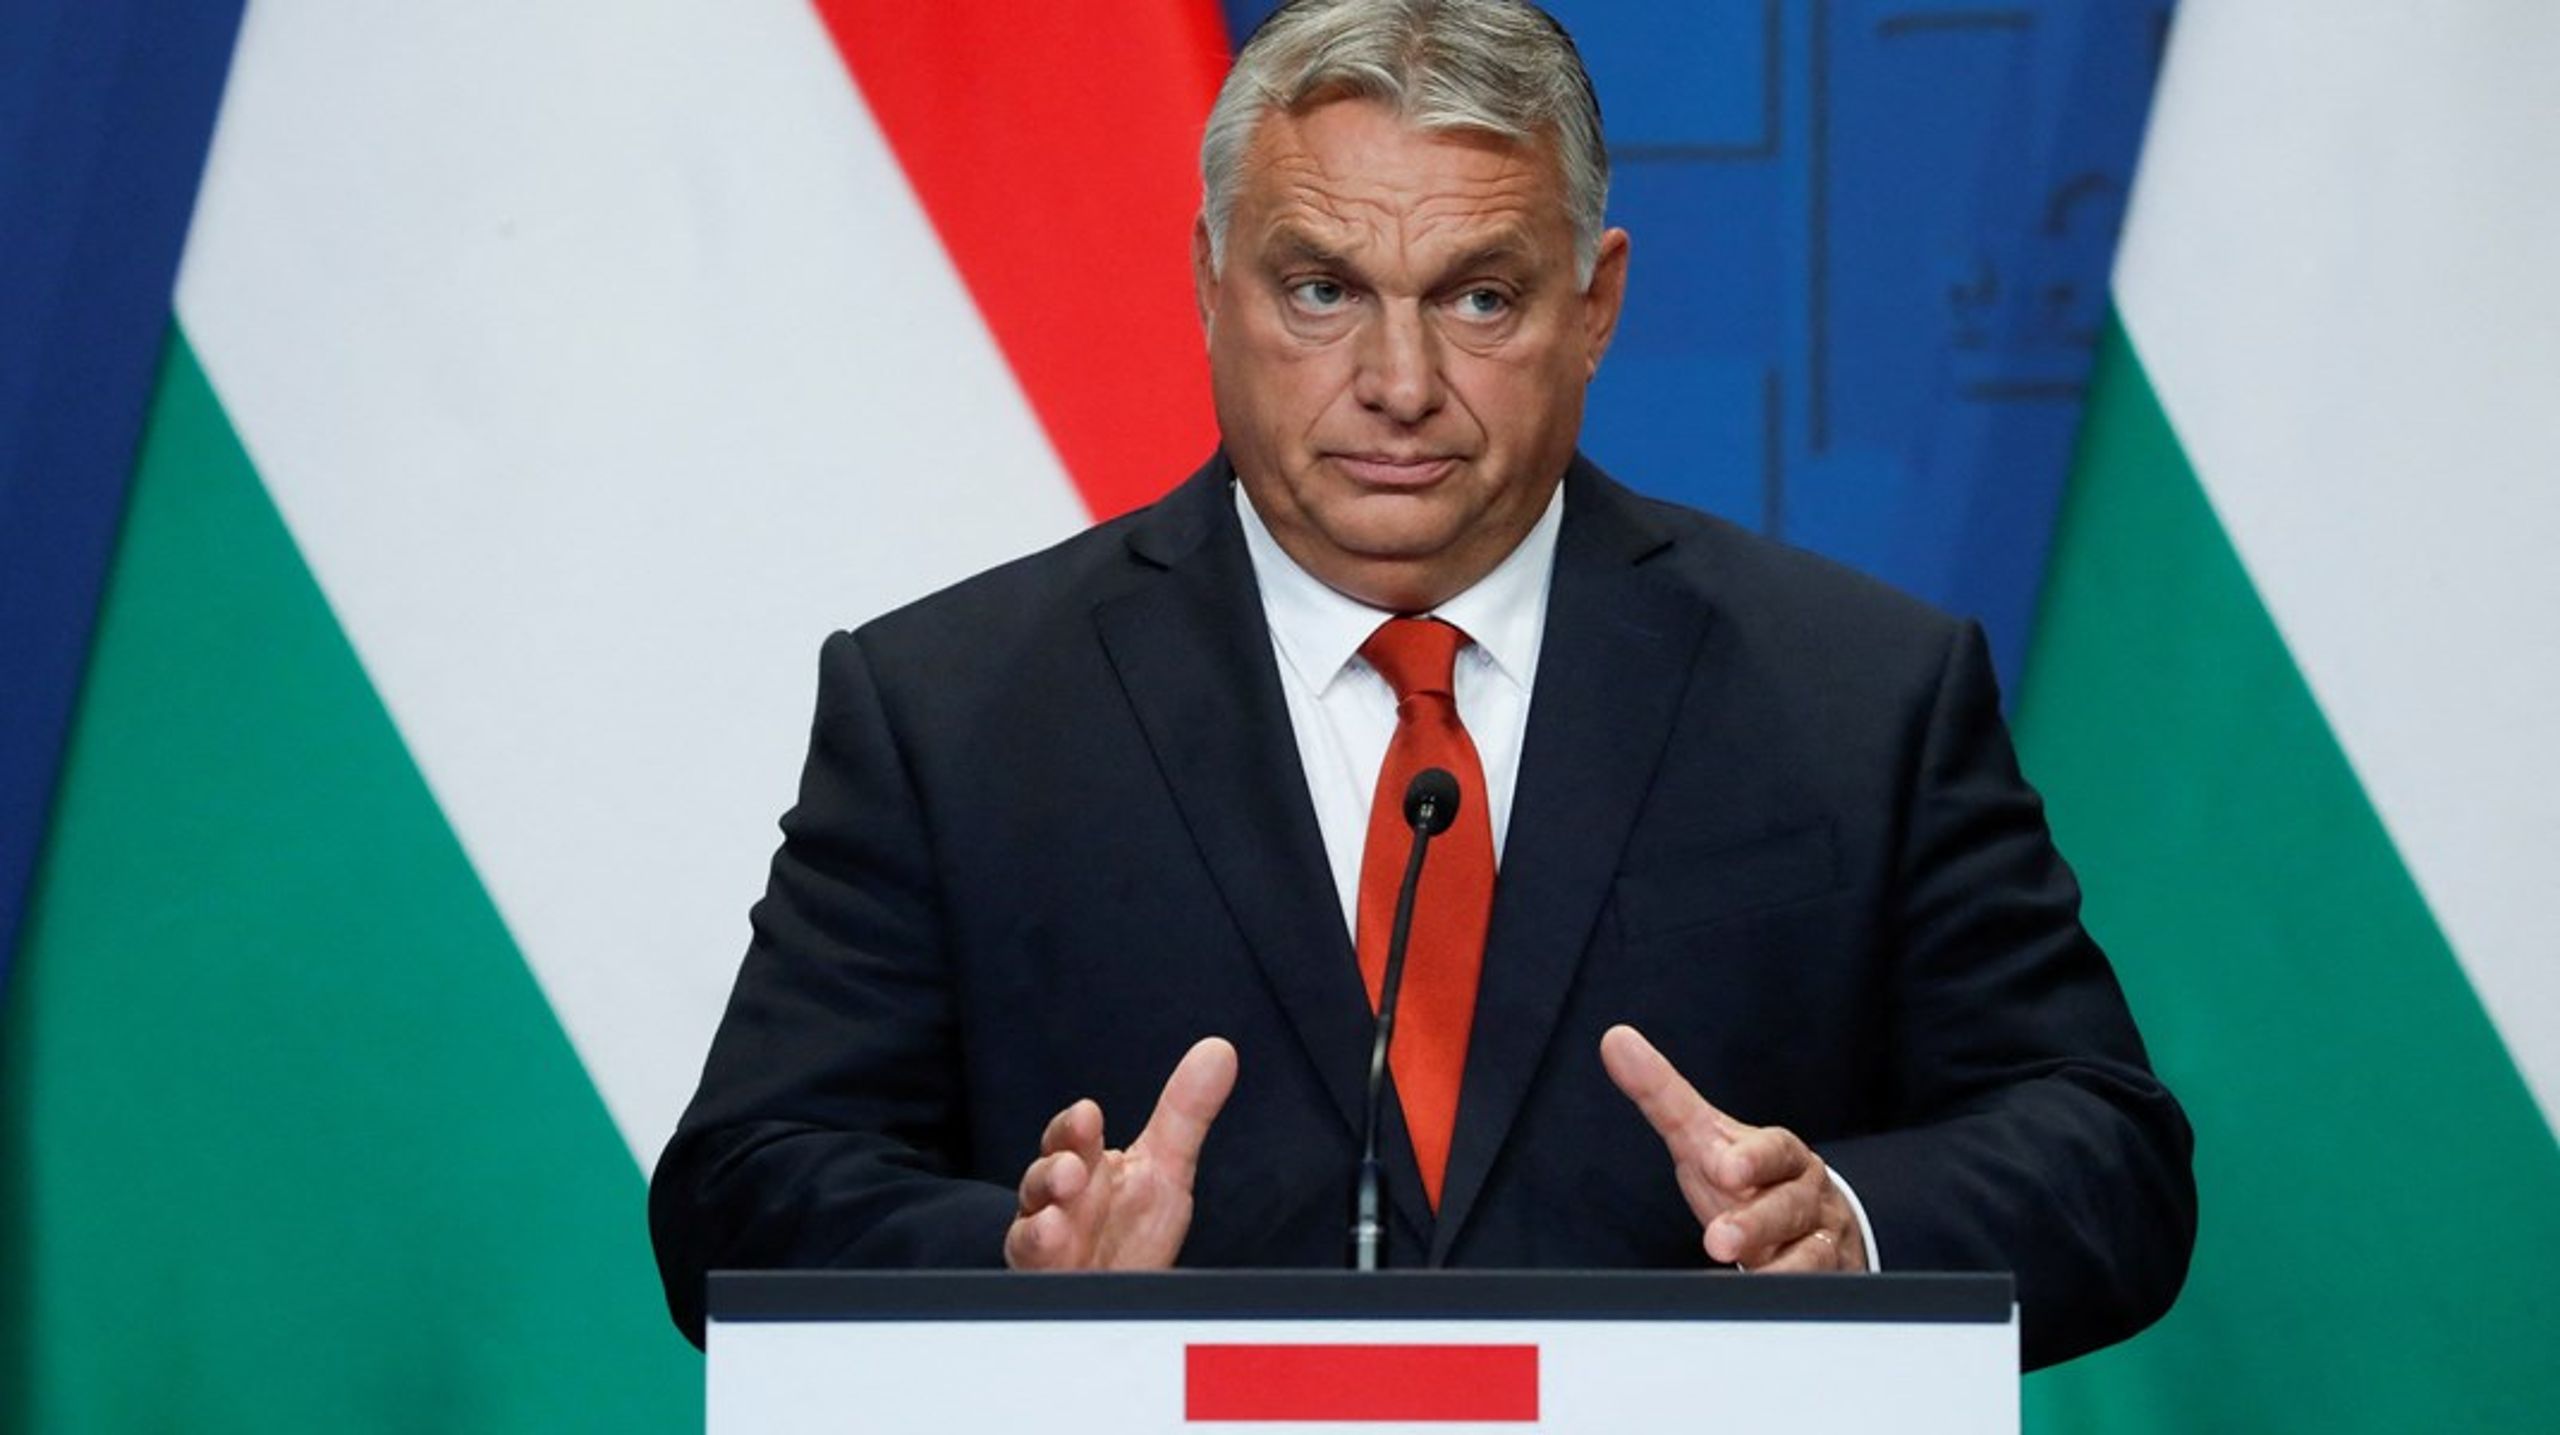 Vestlige demokratiske politikere bør gøre deres yderste for at begrænse Viktor Orbáns indflydelse, skriver Péter Krekó.<br>